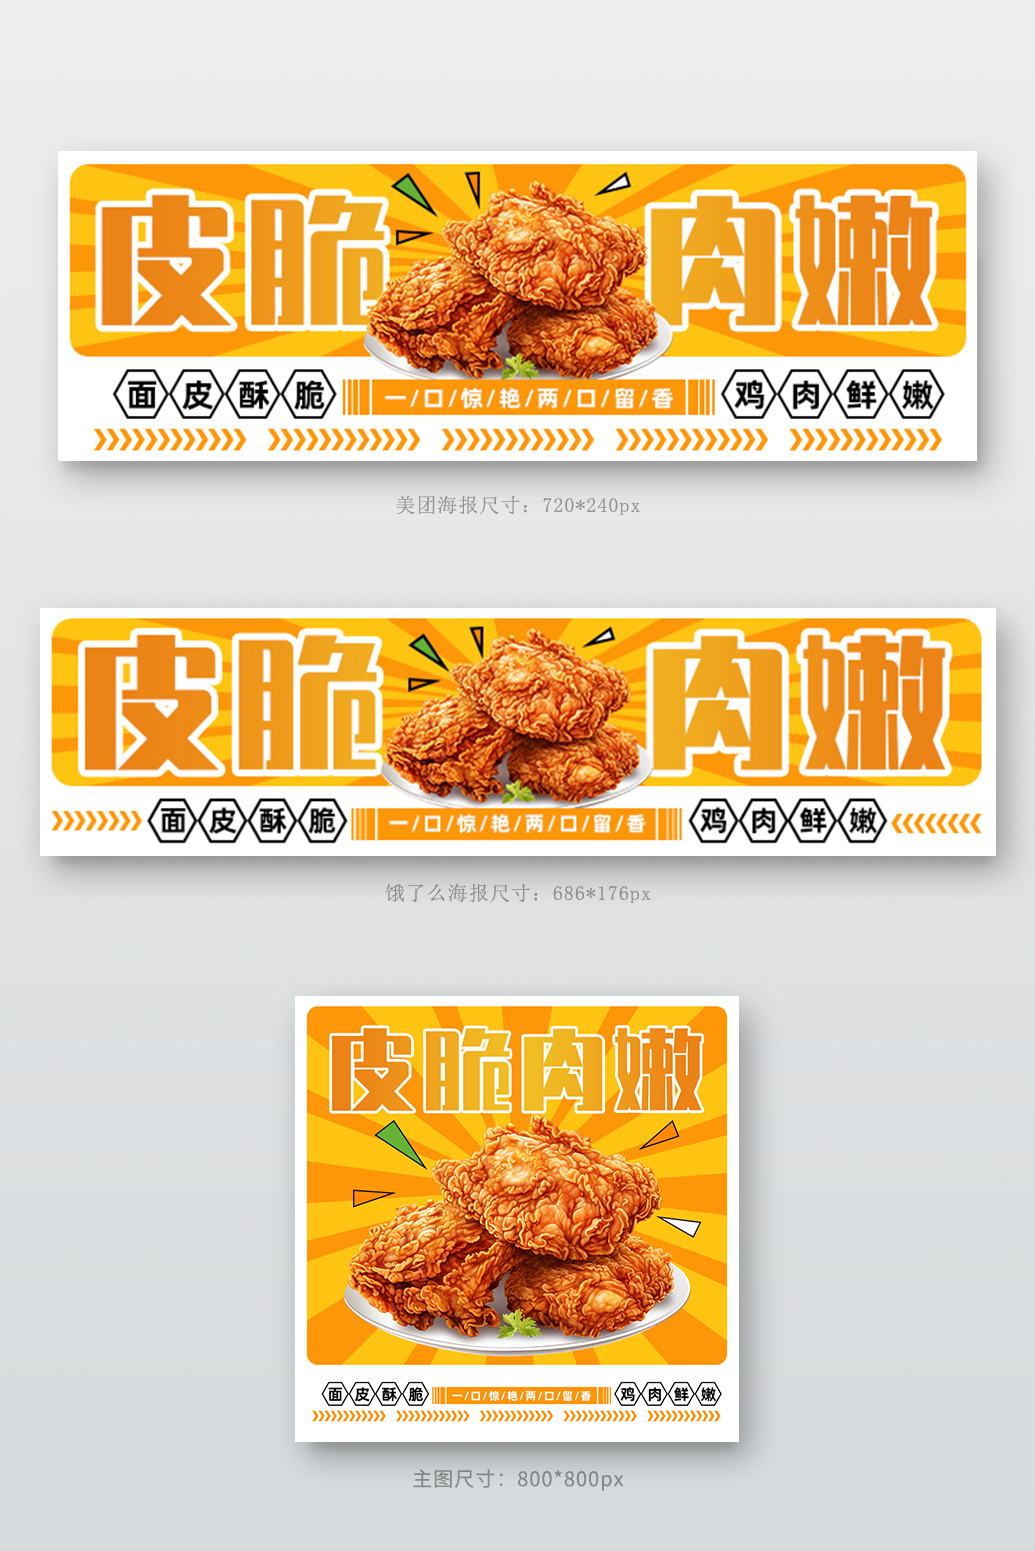 外卖店招炸鸡橙黄中国风电商背景素材图片